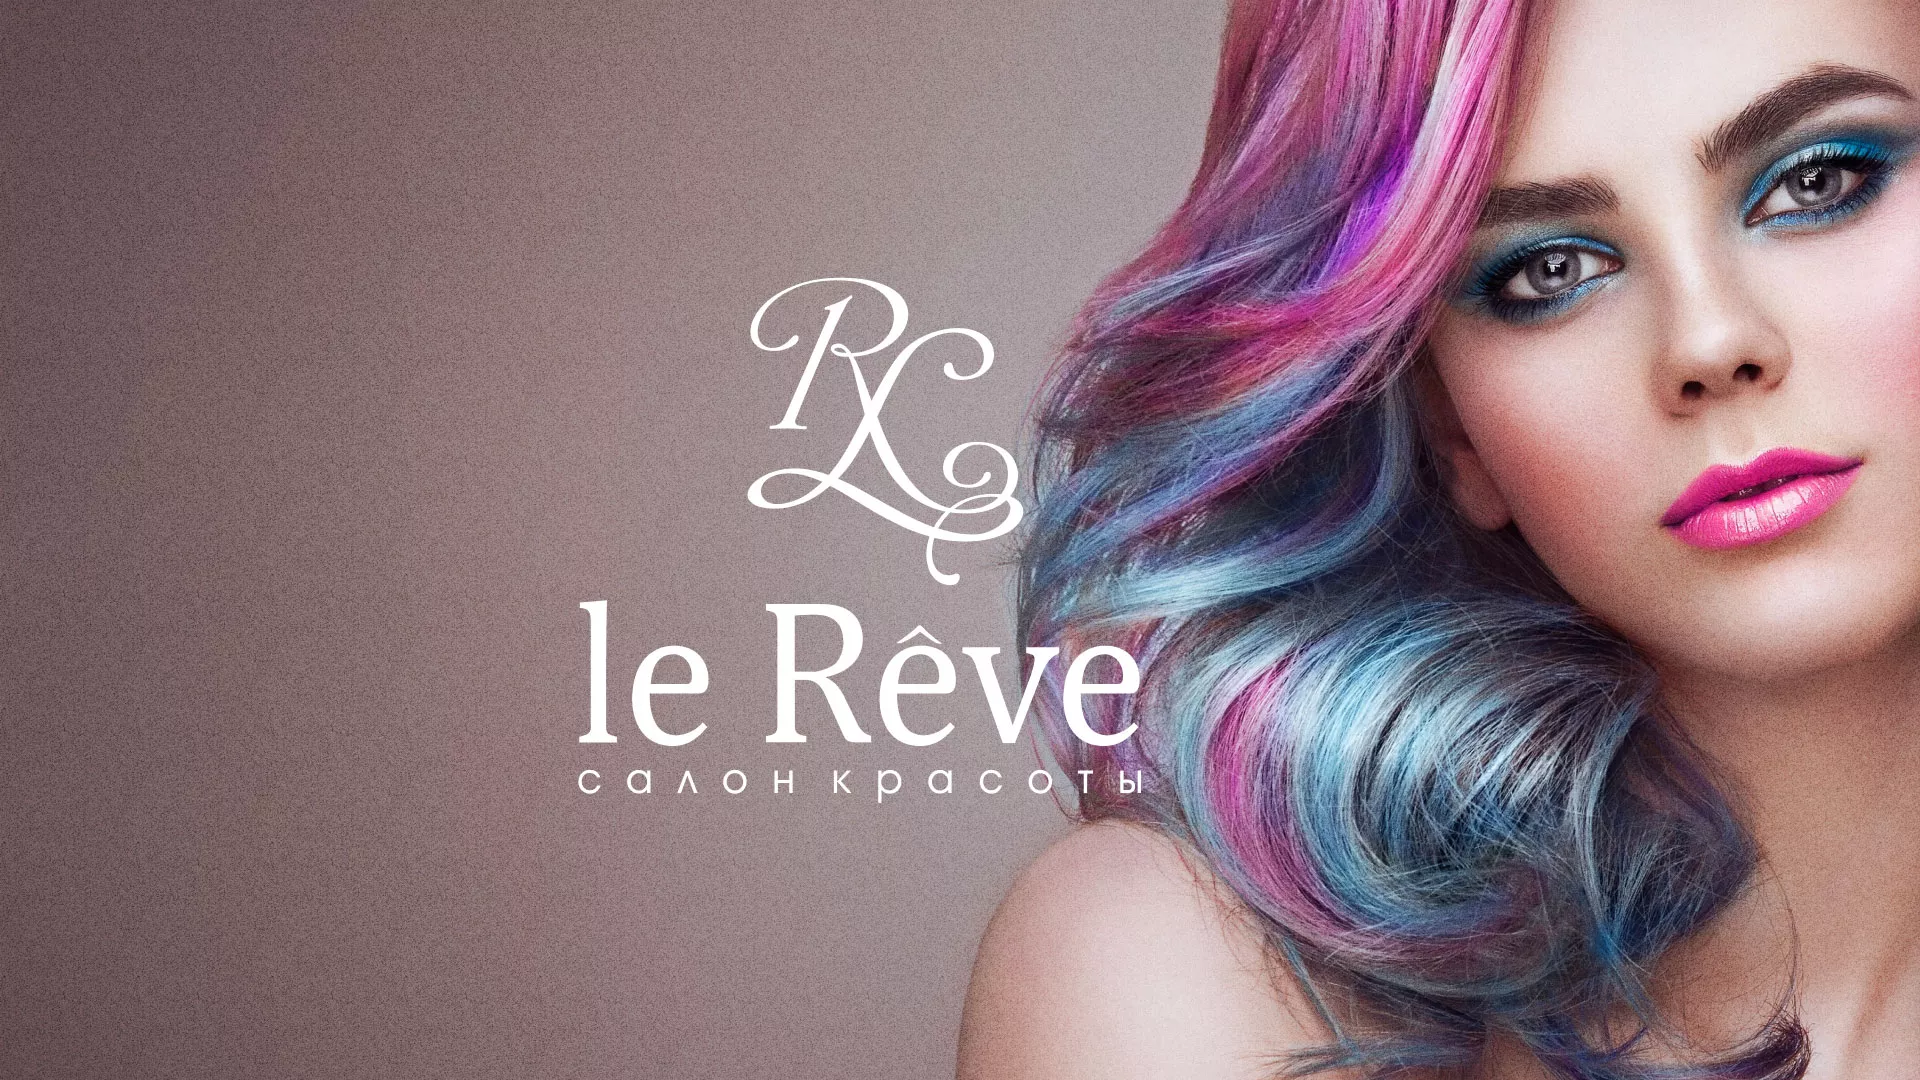 Создание сайта для салона красоты «Le Reve» в Тольятти